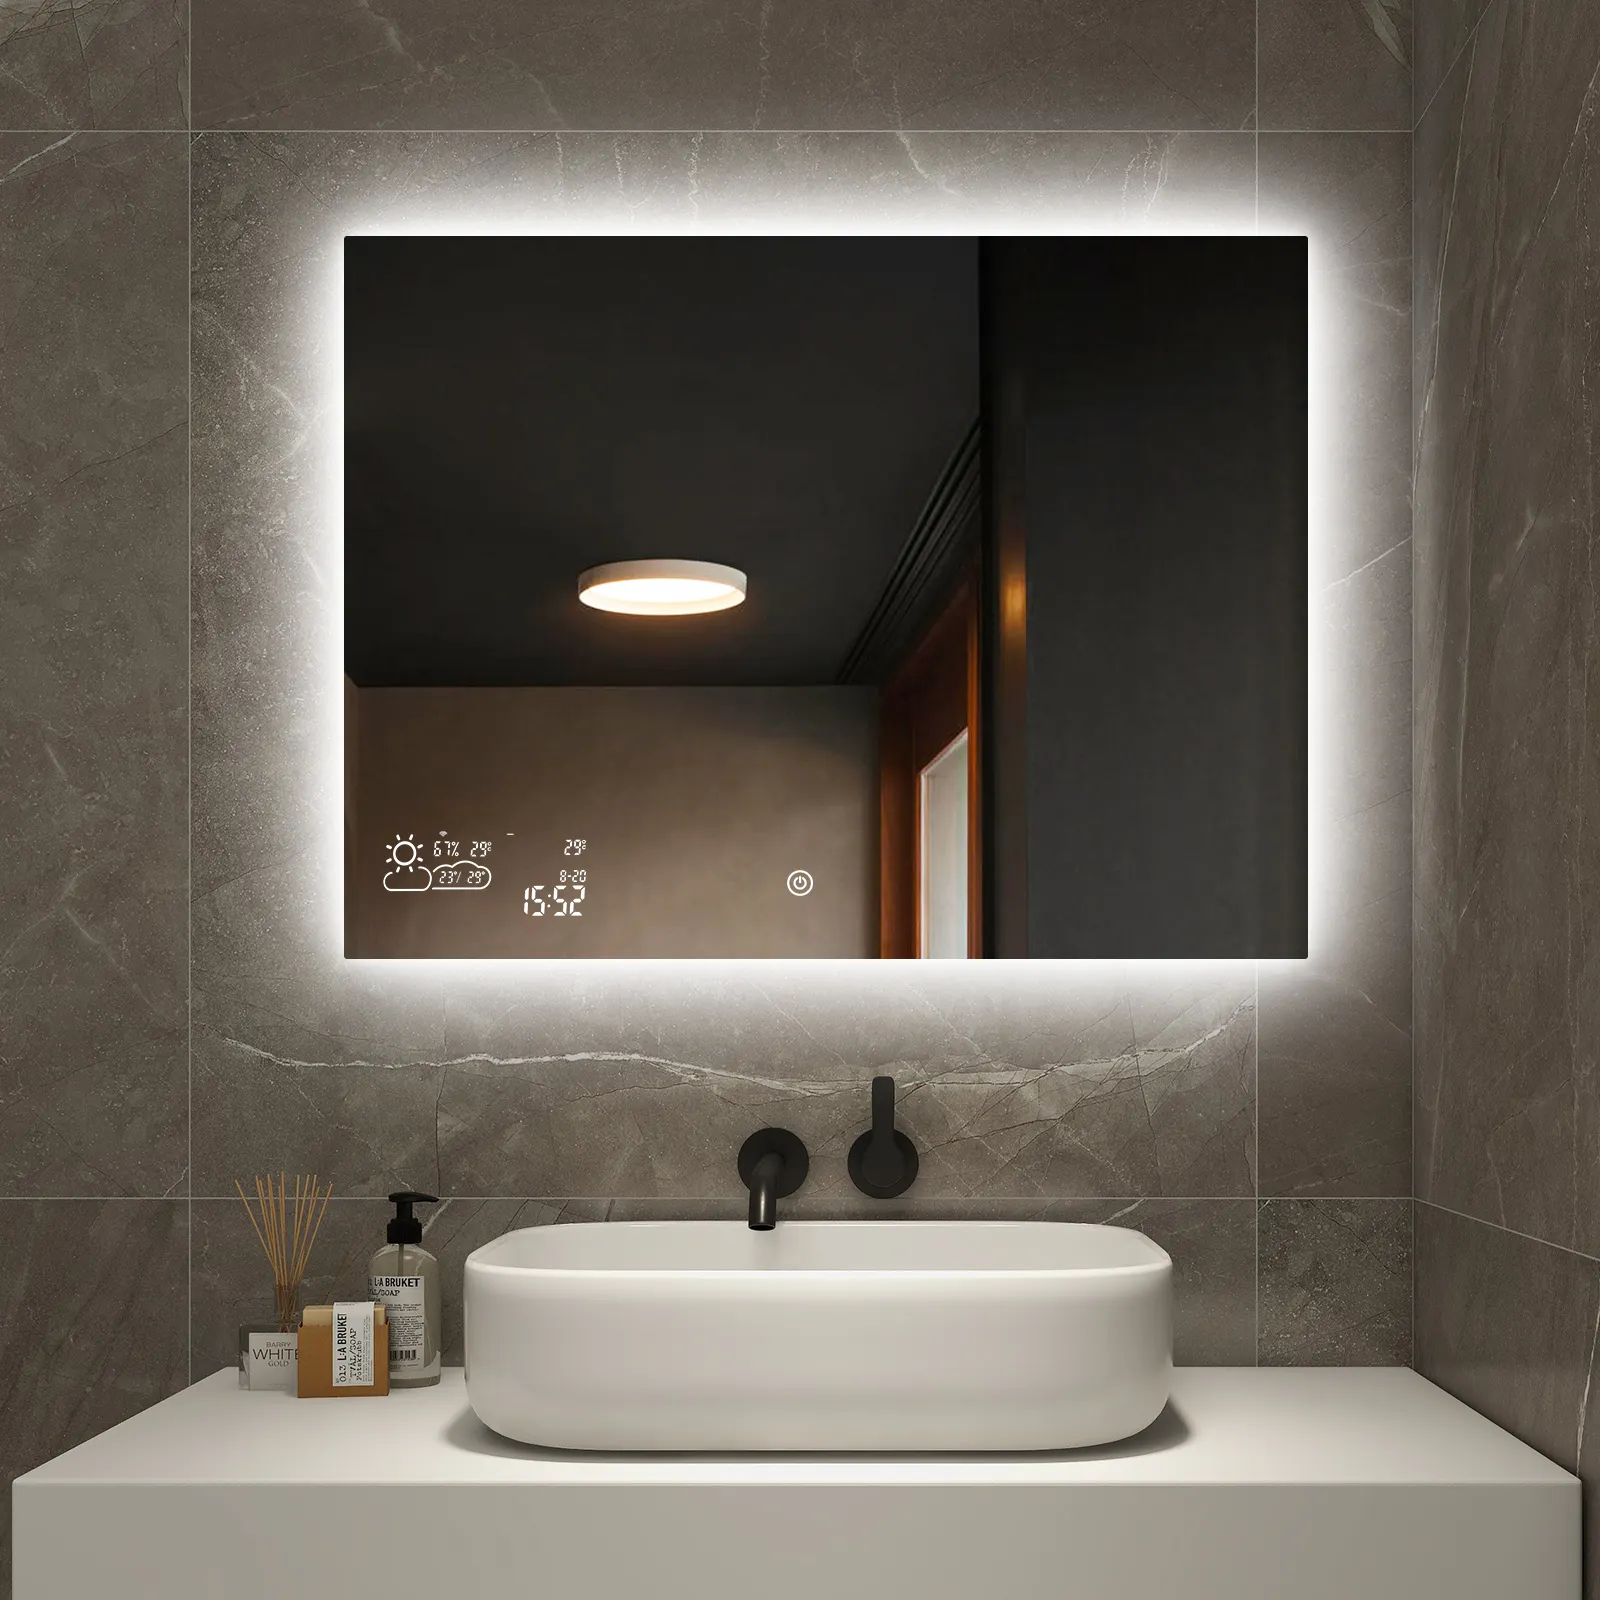 Chinesischer Lieferant Badezimmer LED und Heizung Smart Mirror Touchscreen